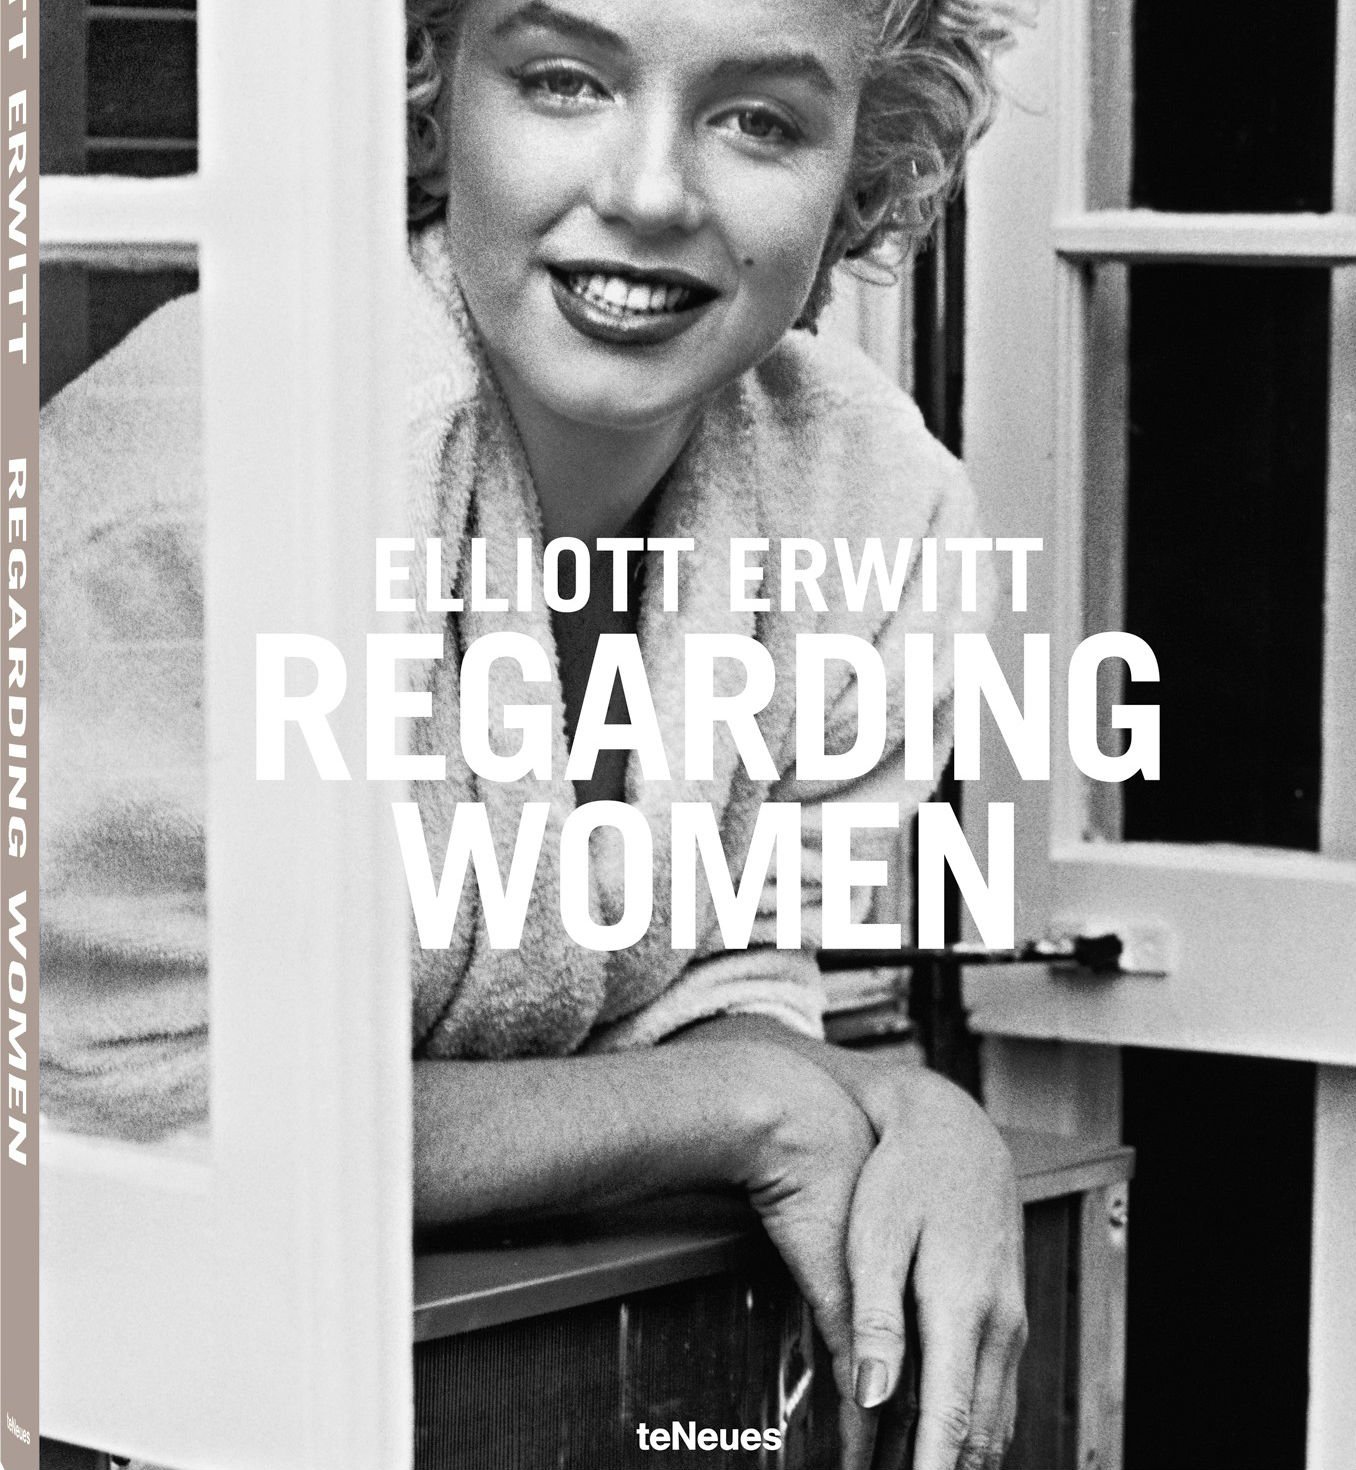 Elliott Erwitt’s Regarding Women